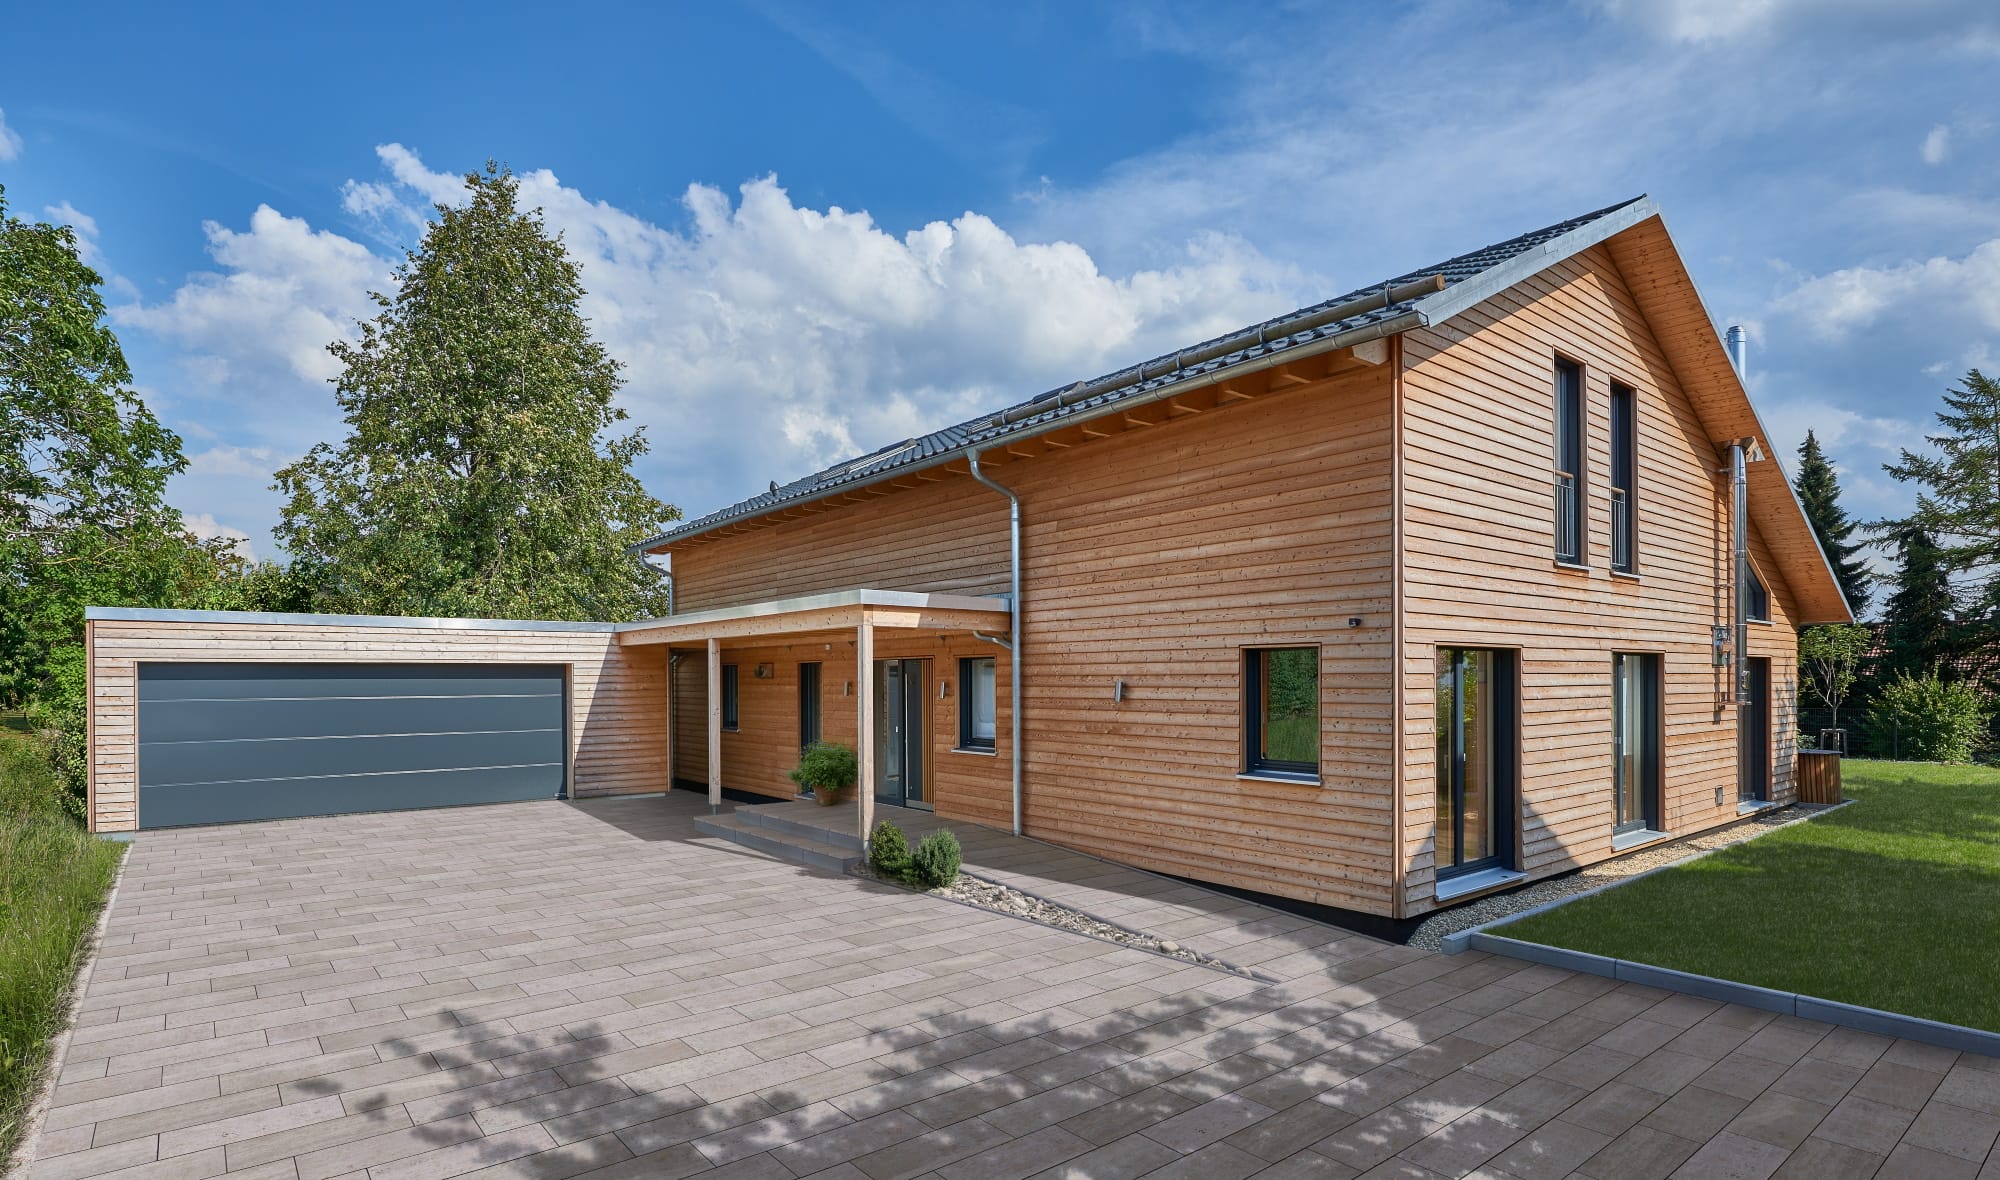 Modernes Einfamilienhaus mit Garage, Satteldach & Holz Fassade, barrierefrei gestaltet - Holzhaus ökologisch bauen Ideen Baufritz Haus SCHWEIGER - HausbauDirekt.de